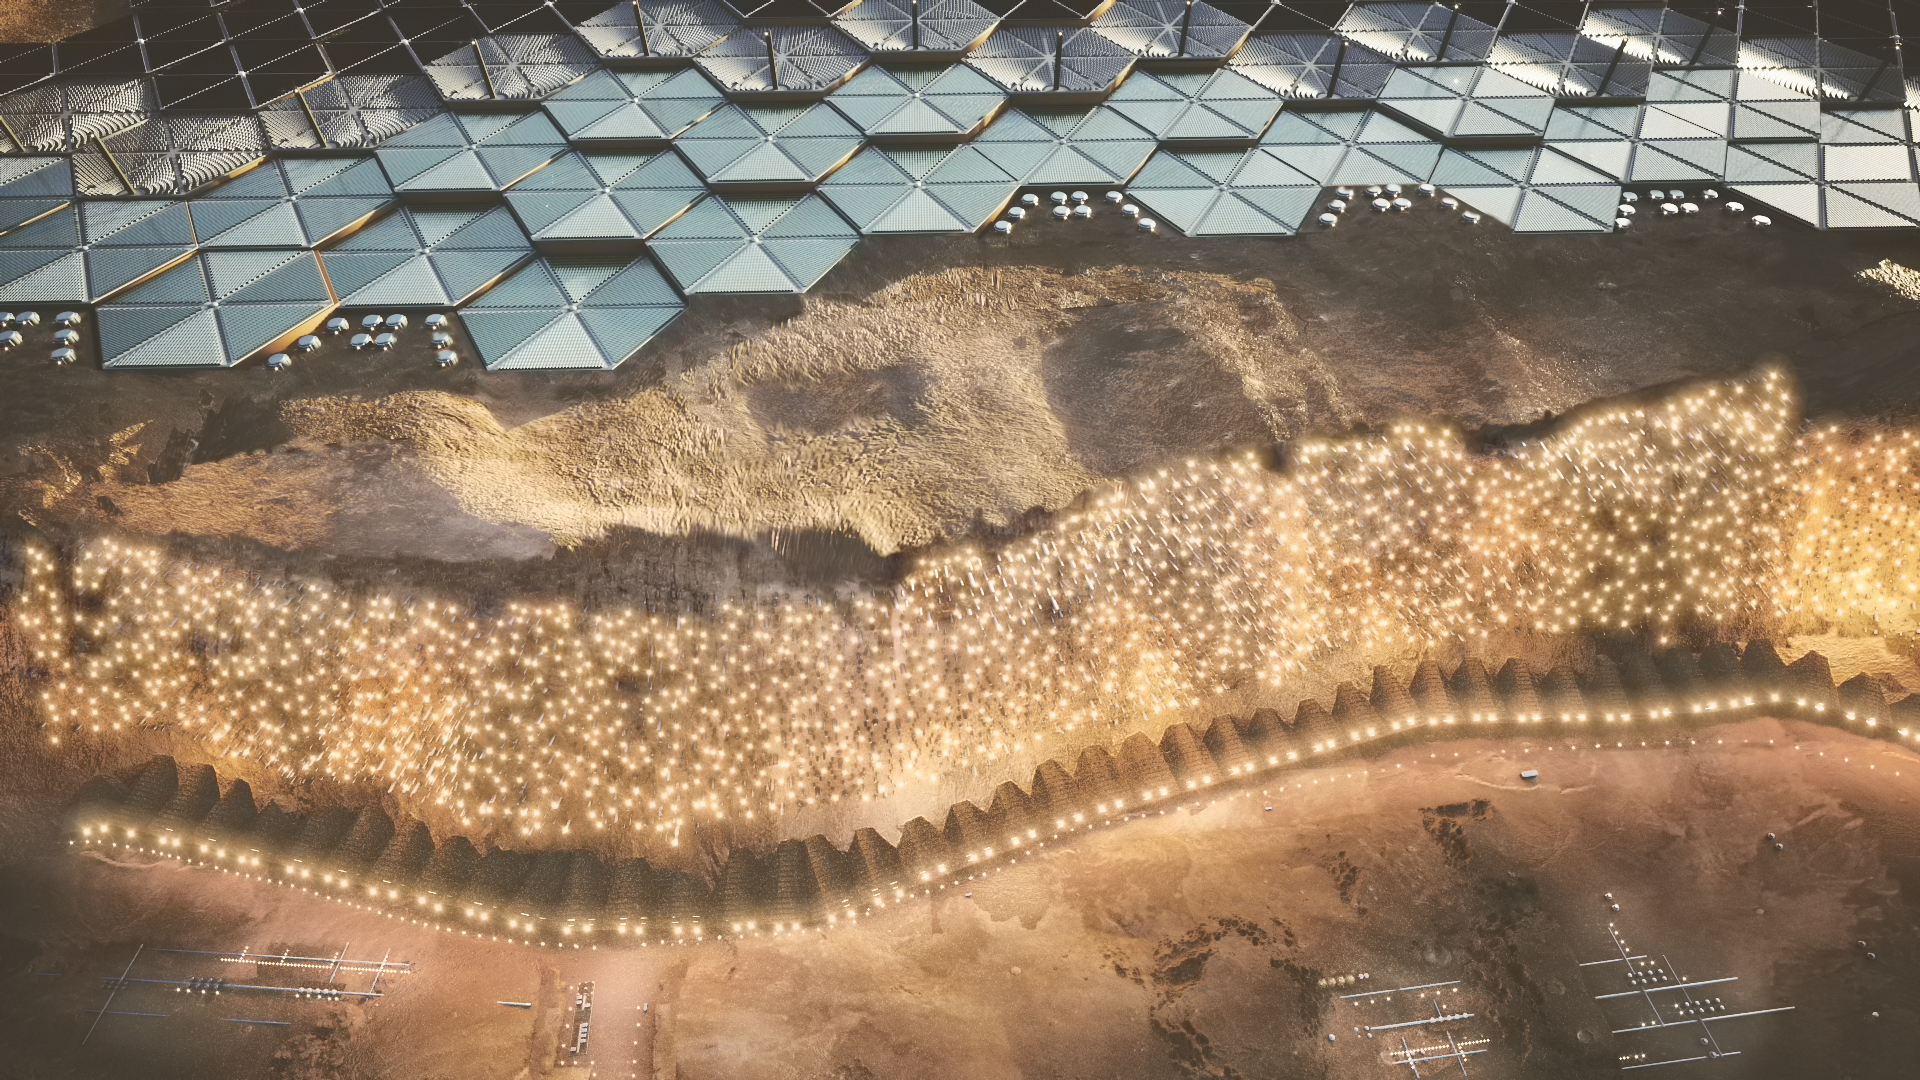 ABIBOO Nuwa Cliff view - Viene pubblicata la prima guida alla vita su Marte: cibo vegetariano completo, città verticale, lavoro part-time retribuito?